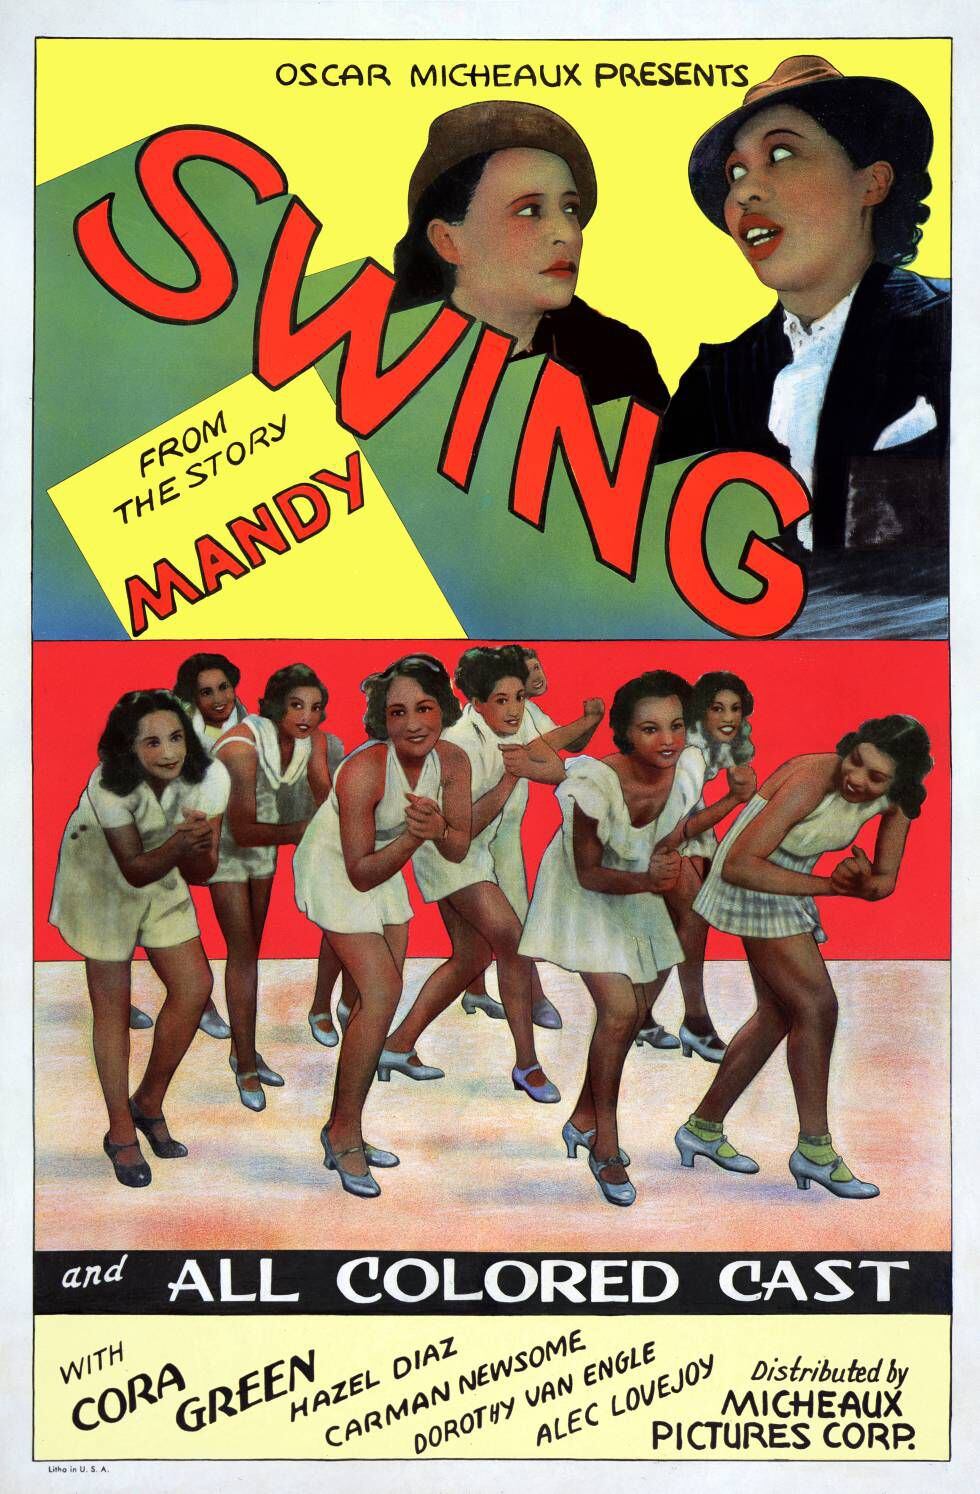  ‘Swing', com todo o “elenco negro” (“all colored cast”). 